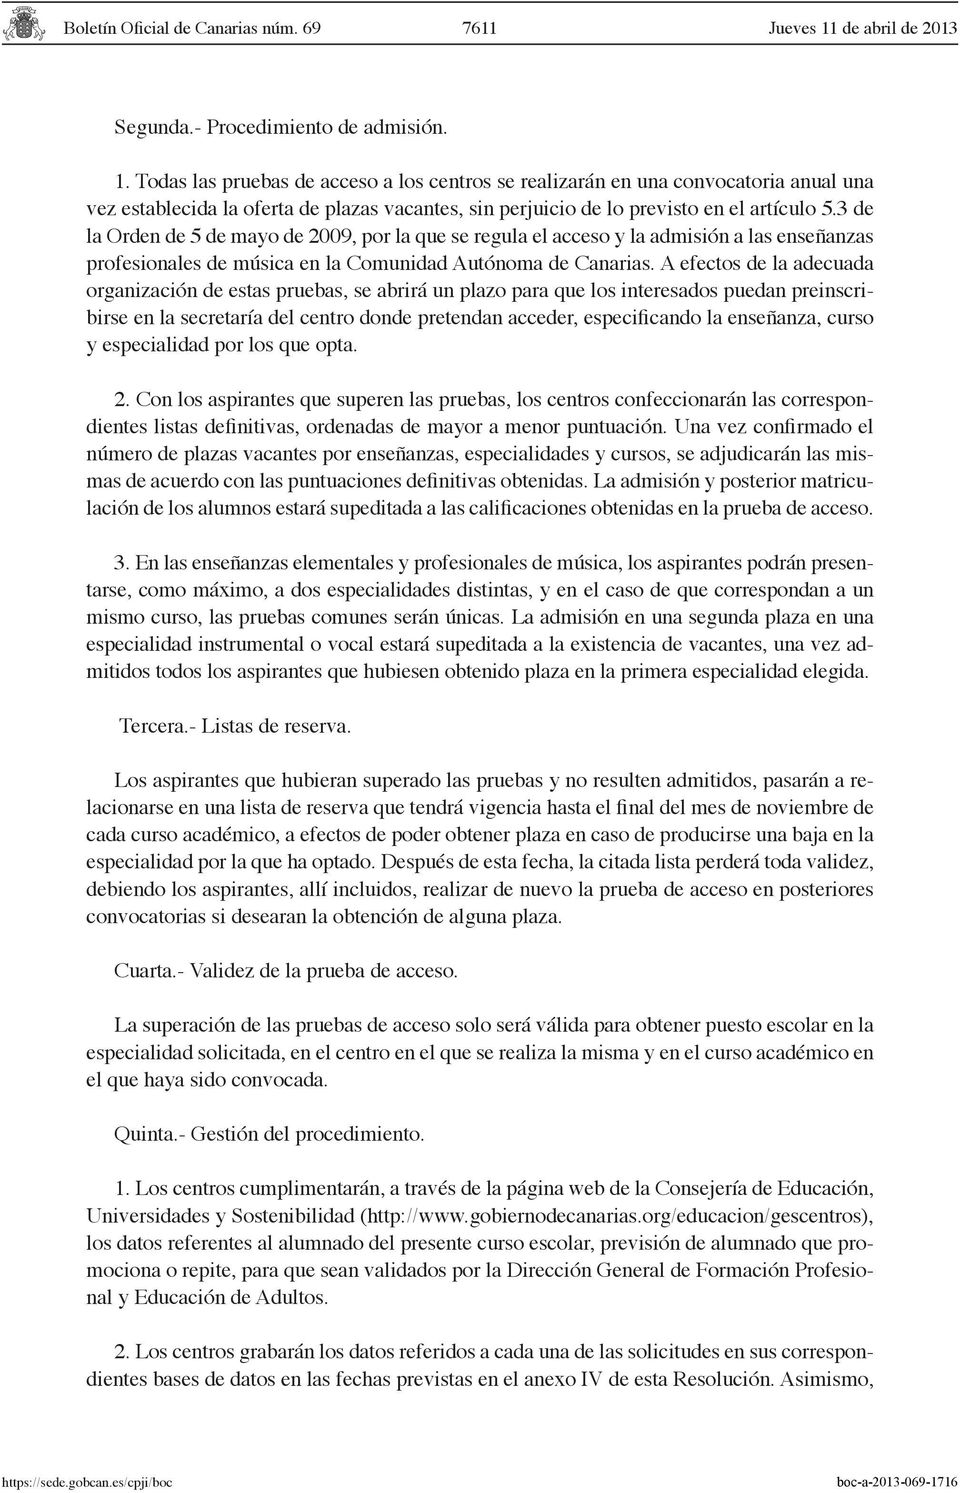 3 de la Orden de 5 de mayo de 2009, por la que se regula el acceso y la admisión a las enseñanzas profesionales de música en la Comunidad Autónoma de Canarias.